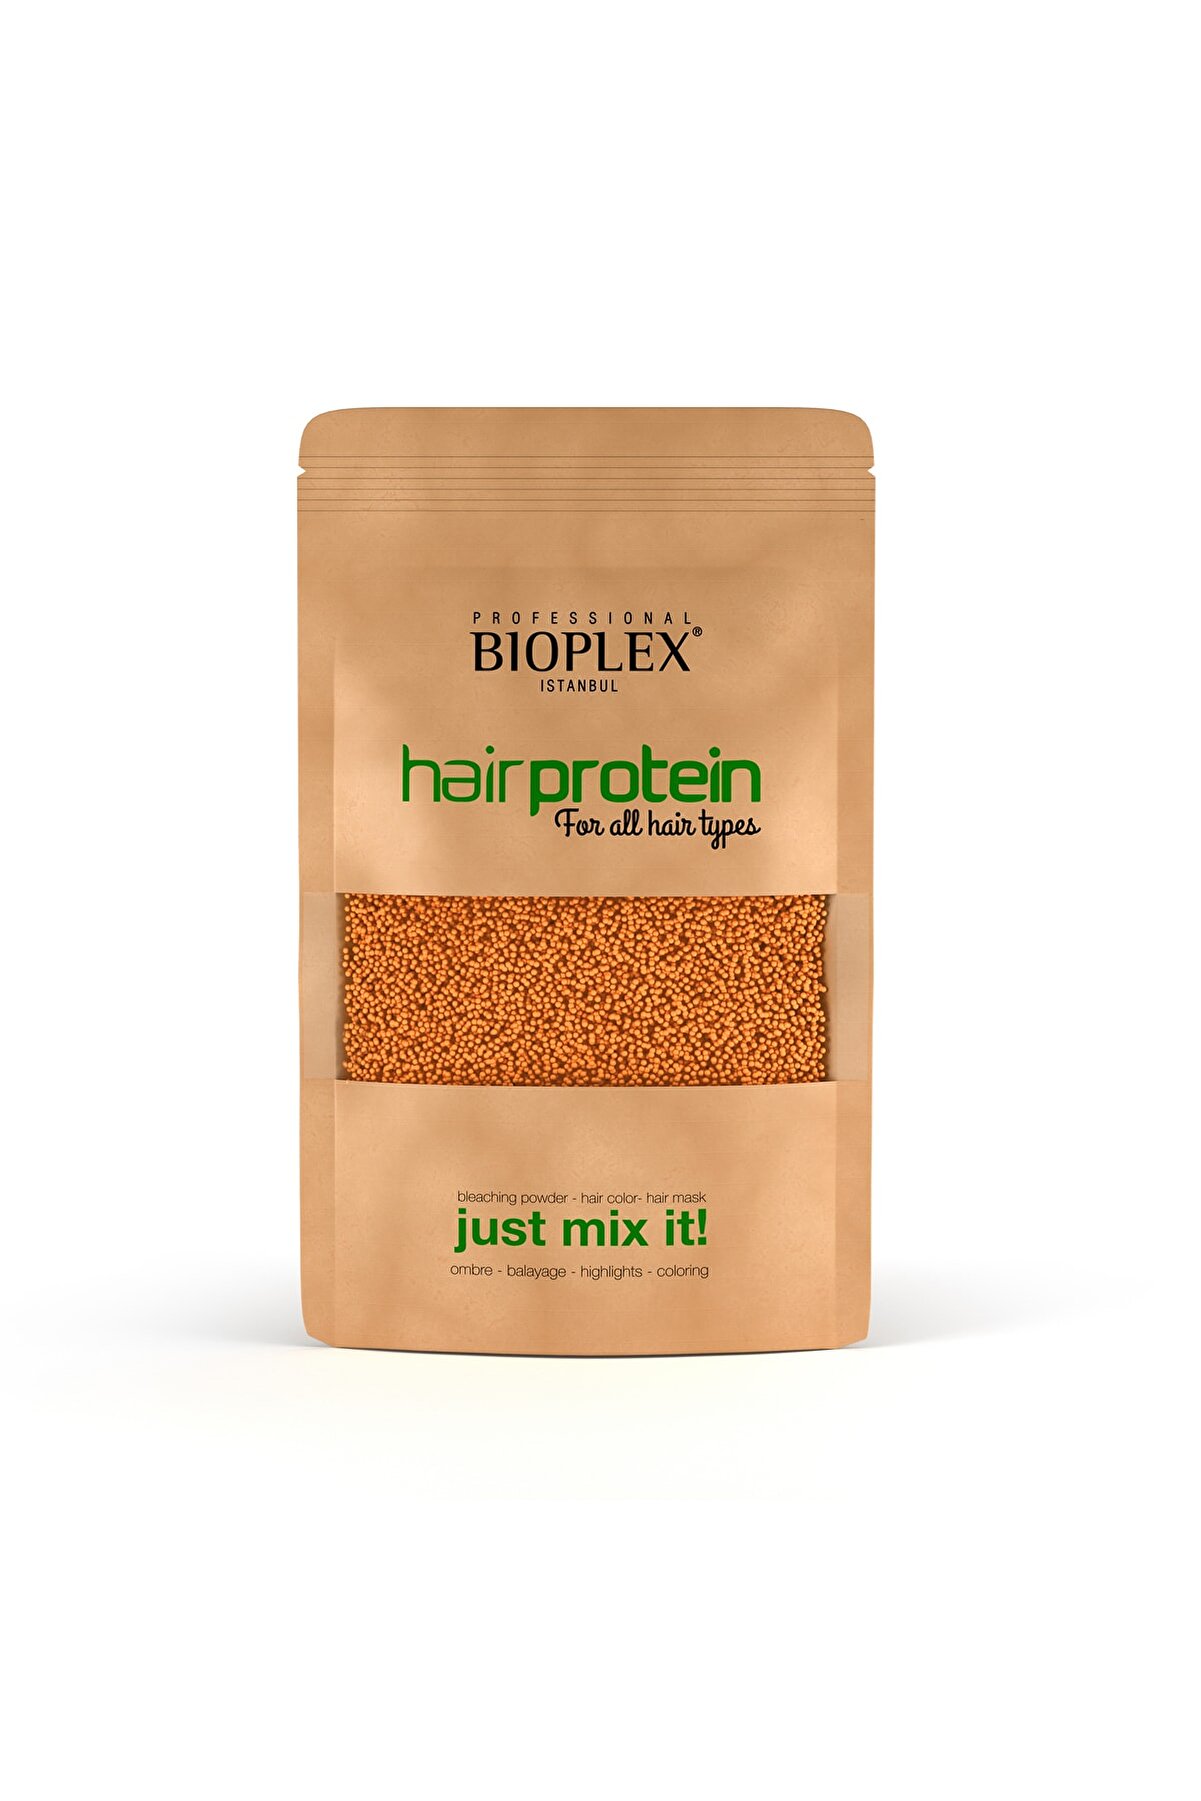 Bioplex Saç Bakım Proteini / Hair Protein - Saç Açma Ve Boya Işlemlerinde Yıpranmalara Karşı Özel Ürün 100gr